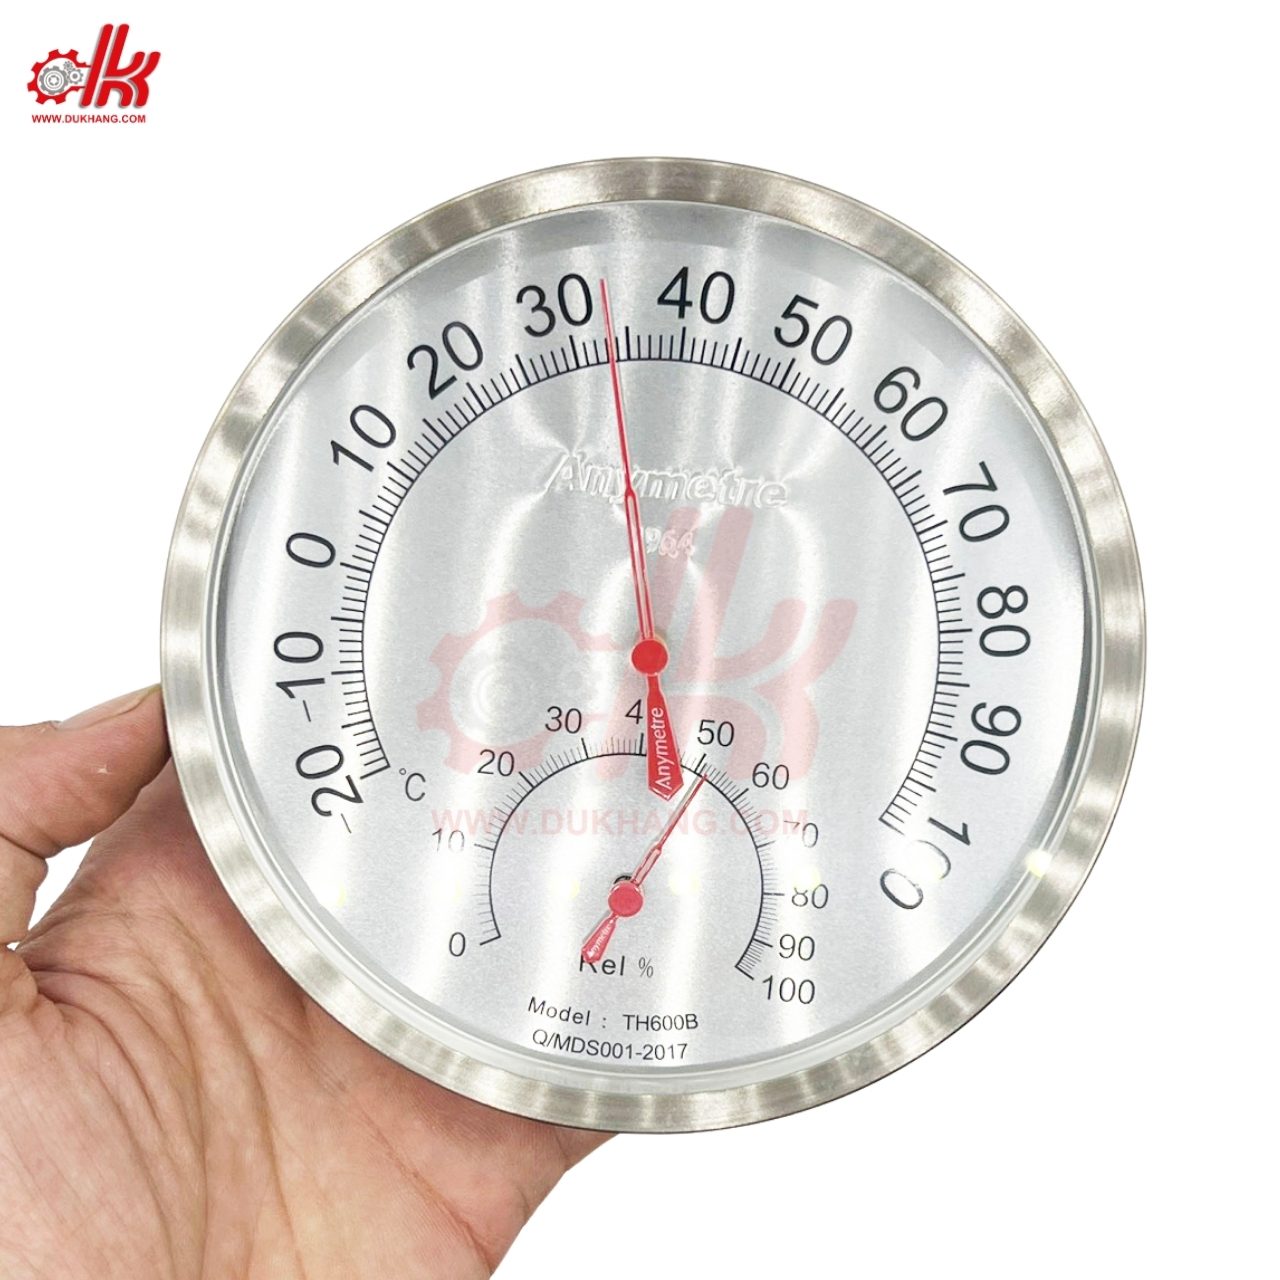 đồng hồ đo nhiệt độ độ ẩm TH600B